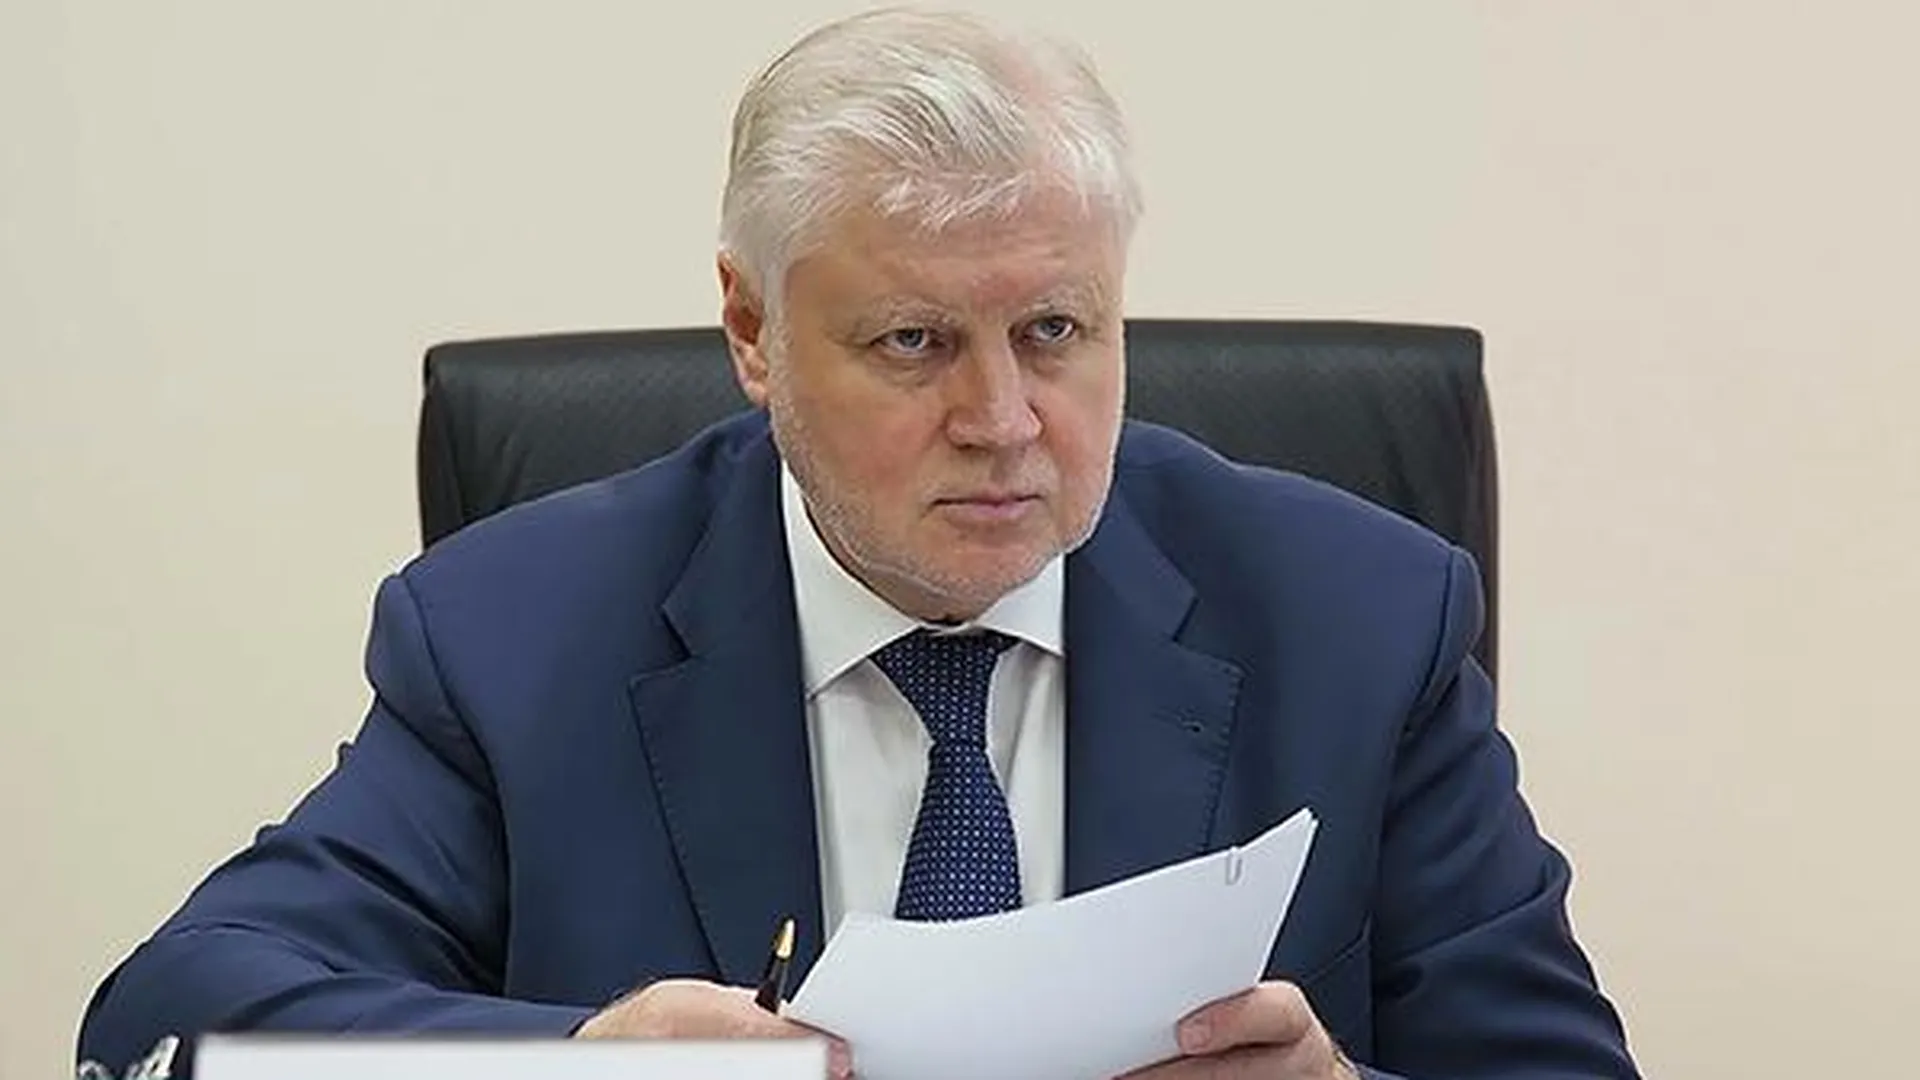 Сергей Миронов пригласил Арнольда Шварценеггера посетить Донбасс